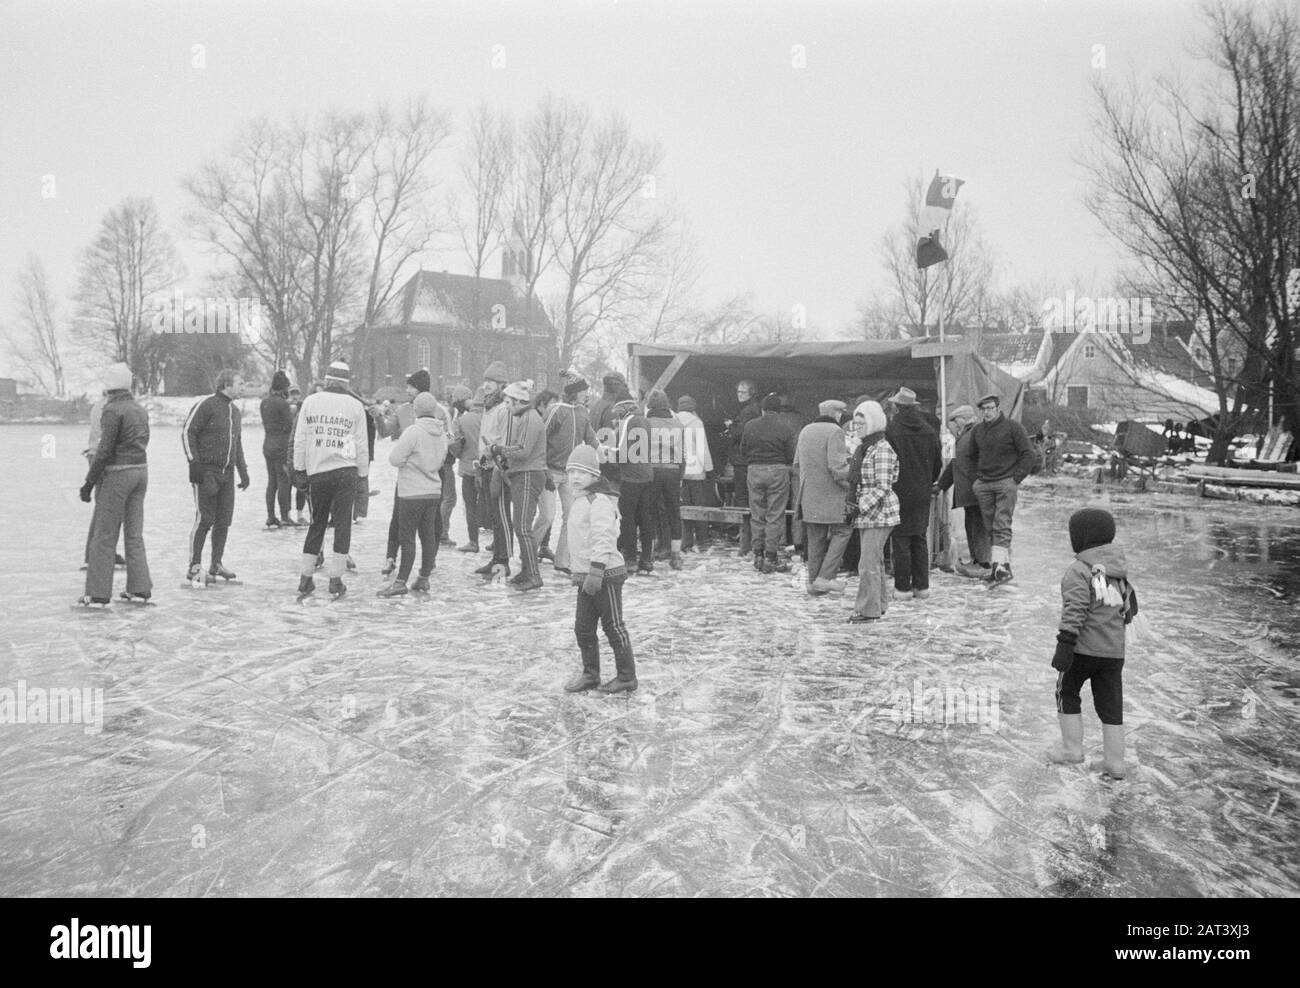 Eispret/Eissegeln auf dem Gouwzee; Eisbeet auf dem Eis Datum: 1. Februar 1976 Schlagwörter: Eis Stockfoto